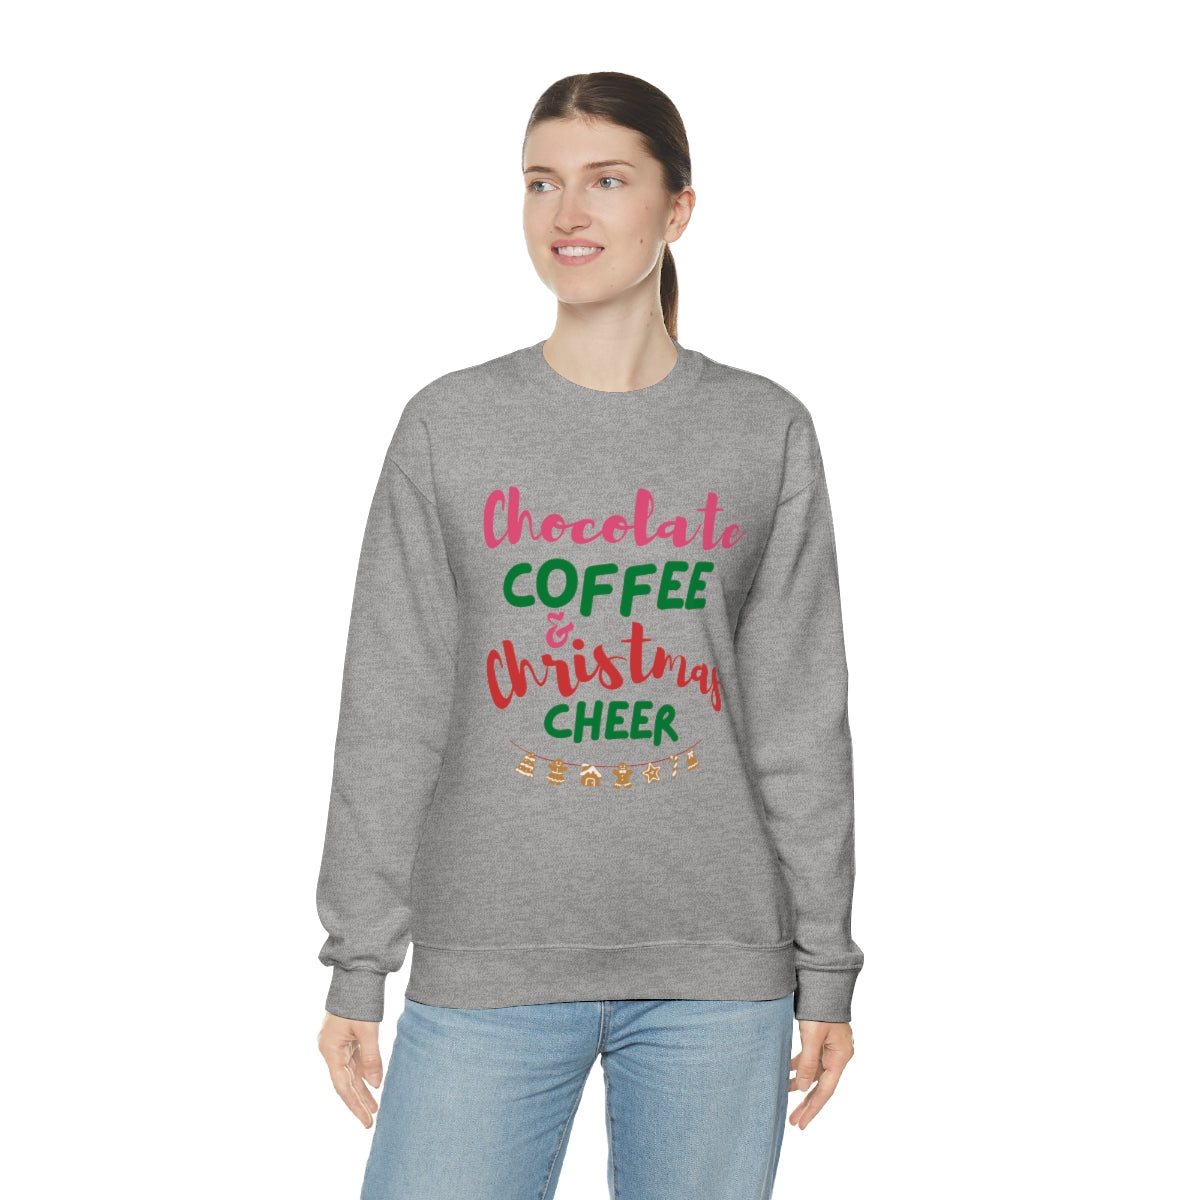 Joyful Comfort: Women's Christmas Cheer Sweatshirt